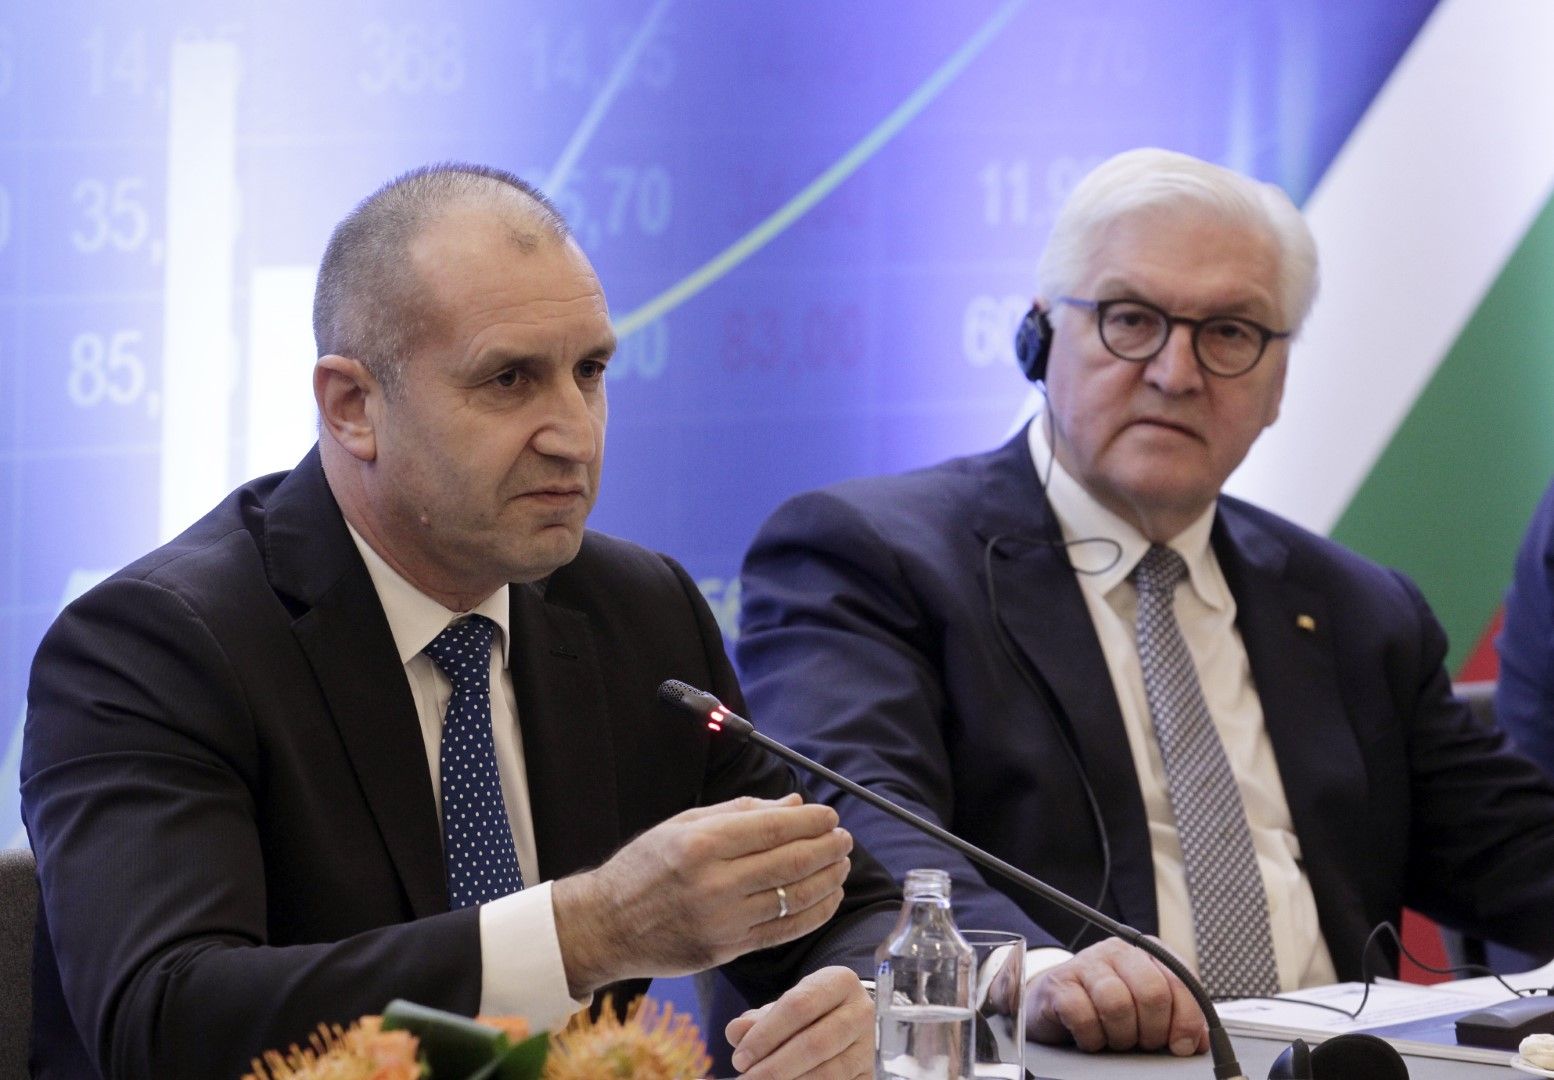 Румен Радев и Франк-Валтер Щайнмайер  по време на бизнес форум в началото на април 2019 г.